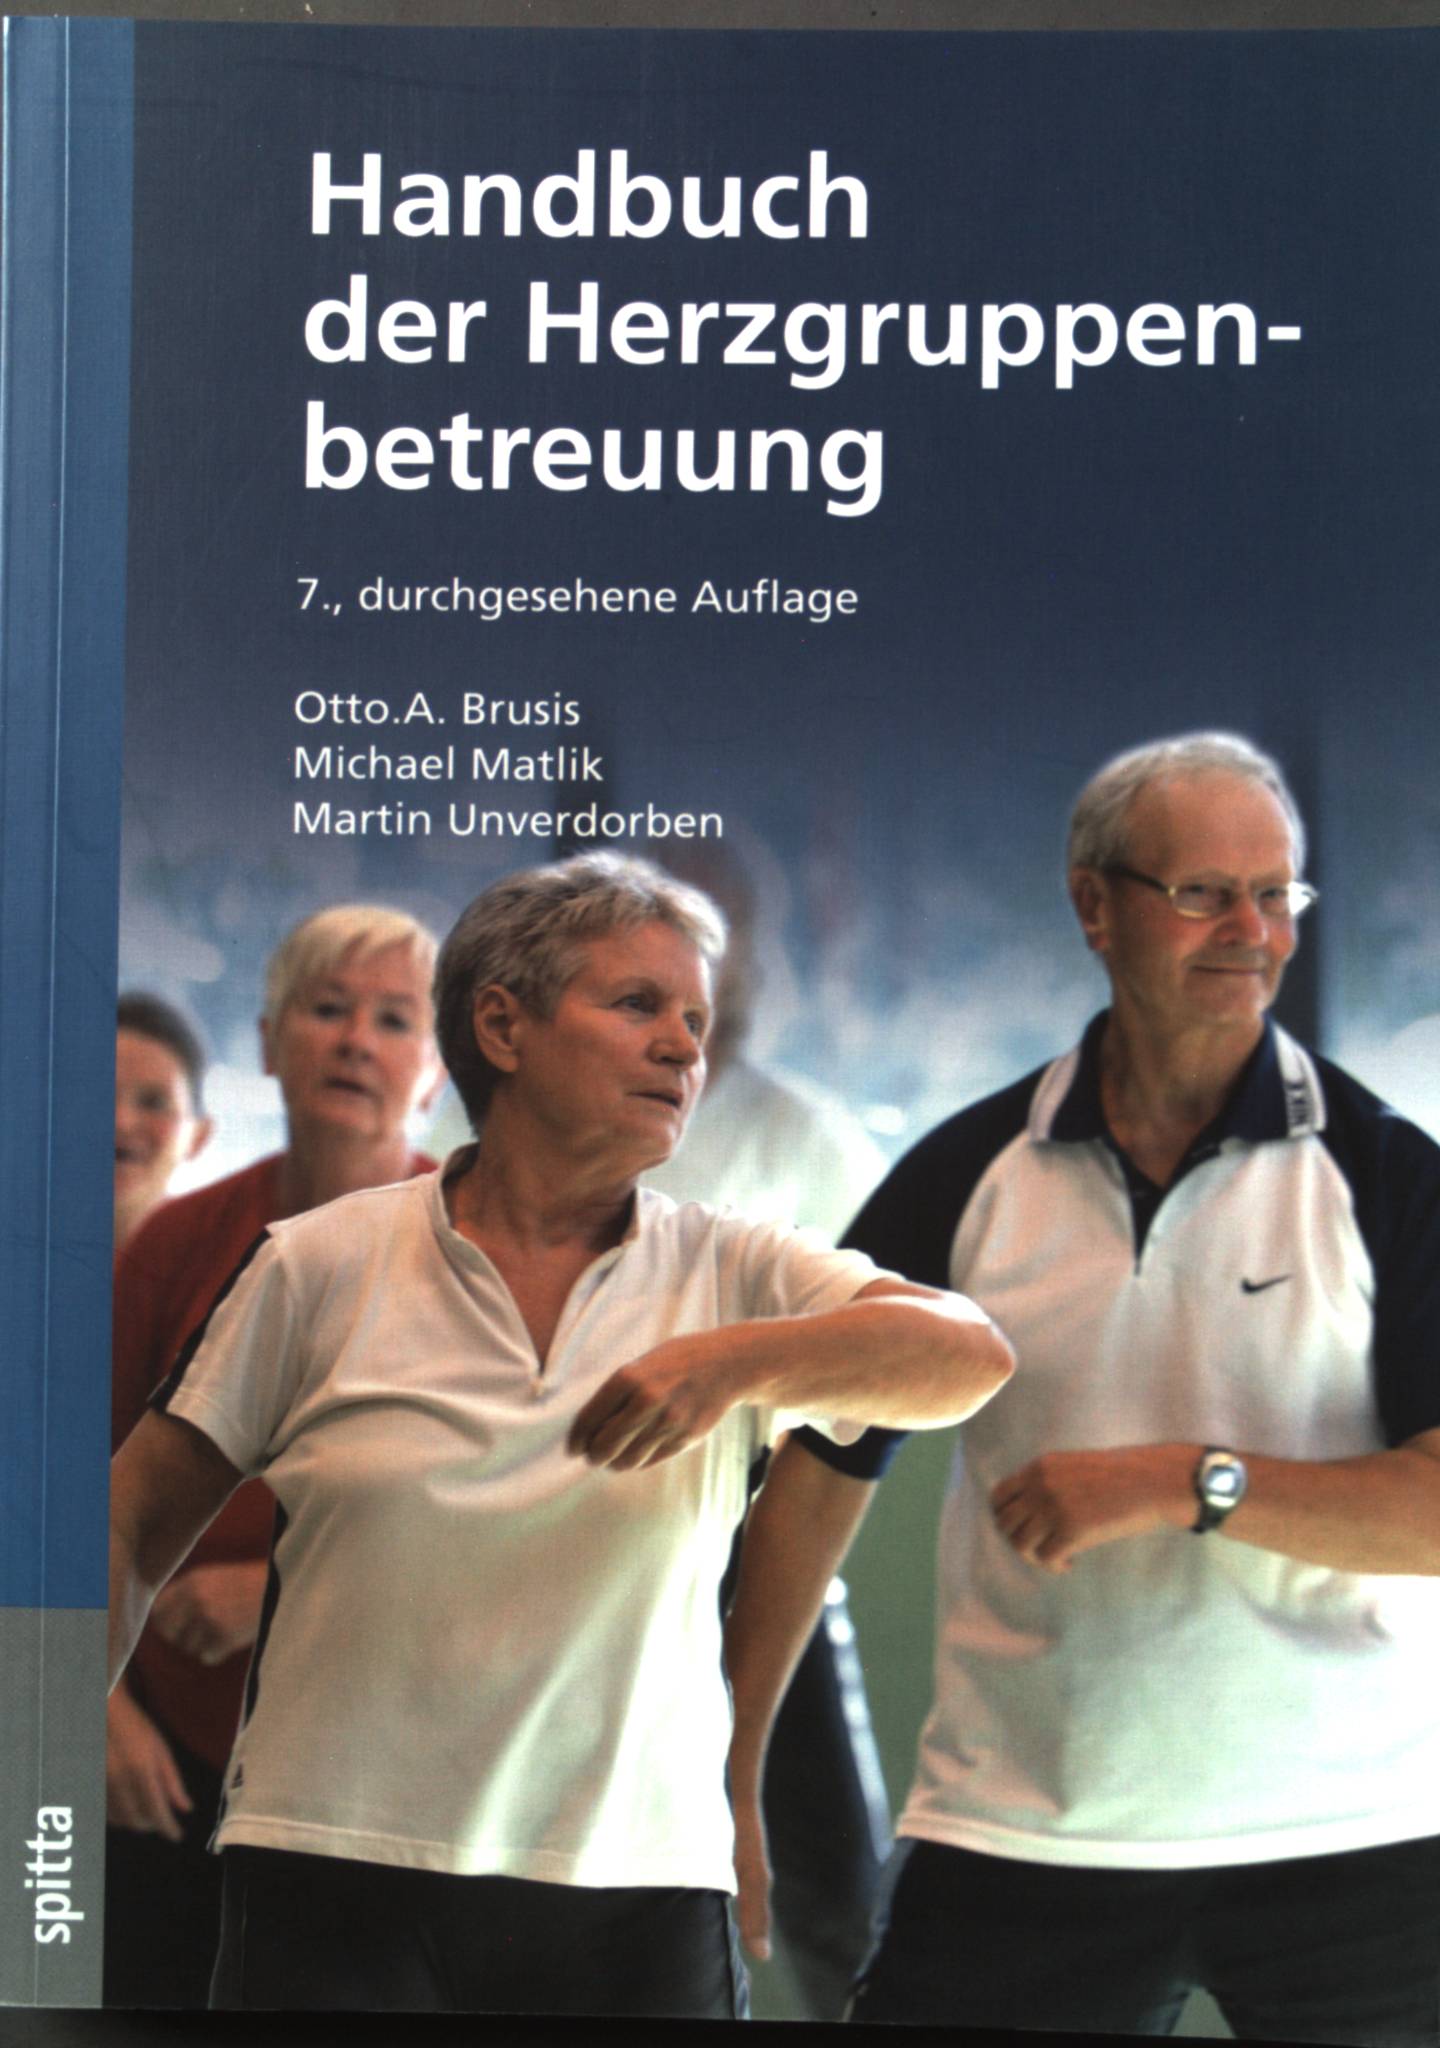 Handbuch der Herzgruppenbetreuung  7. Auflage; - Brusis, Otto A, Michael Matlik und Martin Unverdorben